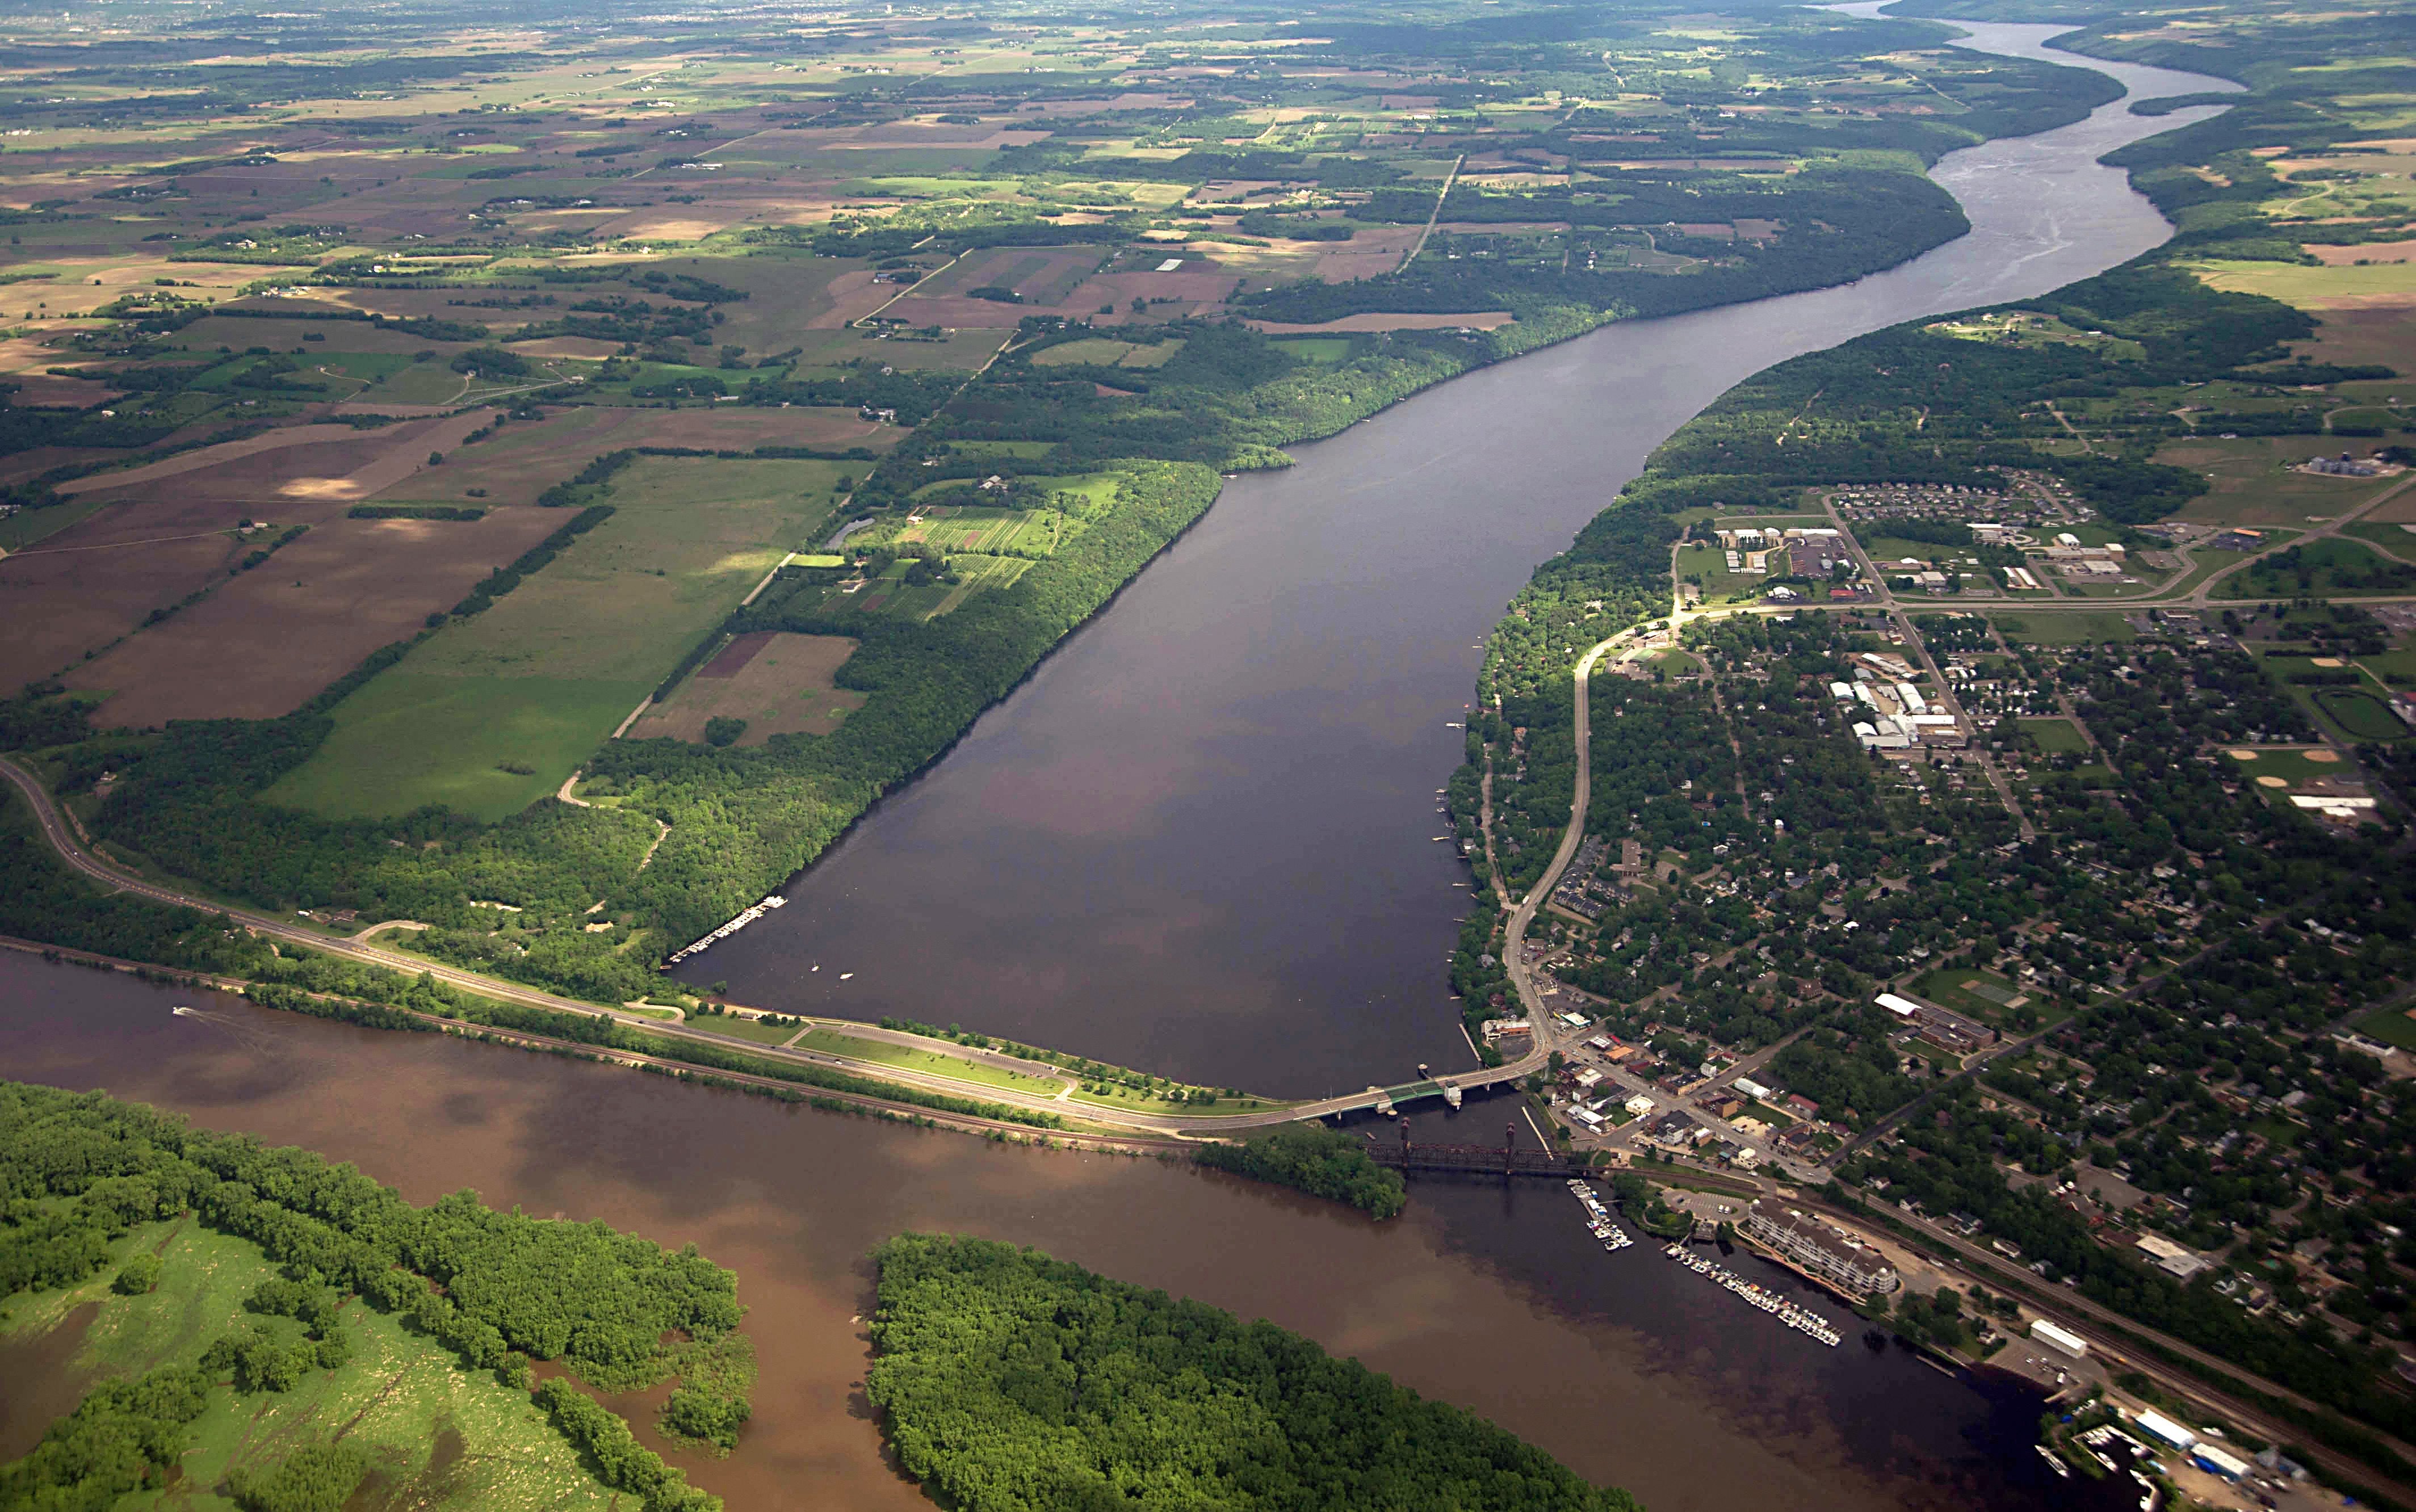 Приток крупнейшей реки северной америки. Река Миссисипи. Долина Миссисипи. Миссисипи США. Река Миссисипи США.